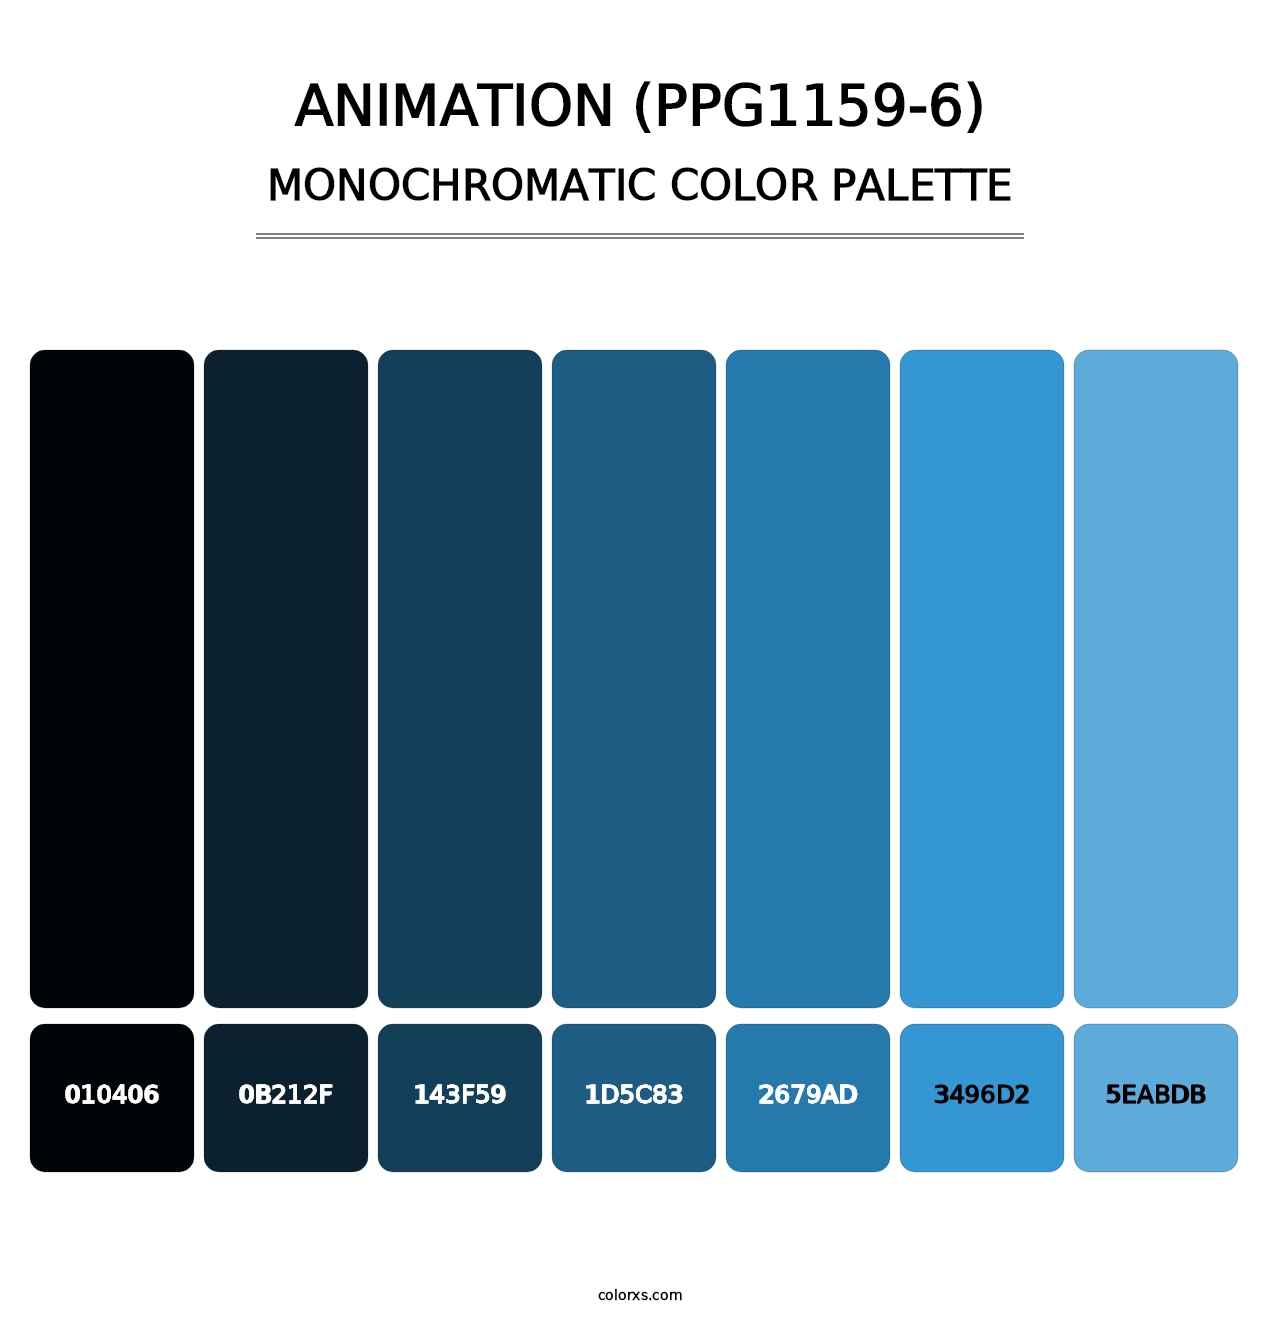 Animation (PPG1159-6) - Monochromatic Color Palette